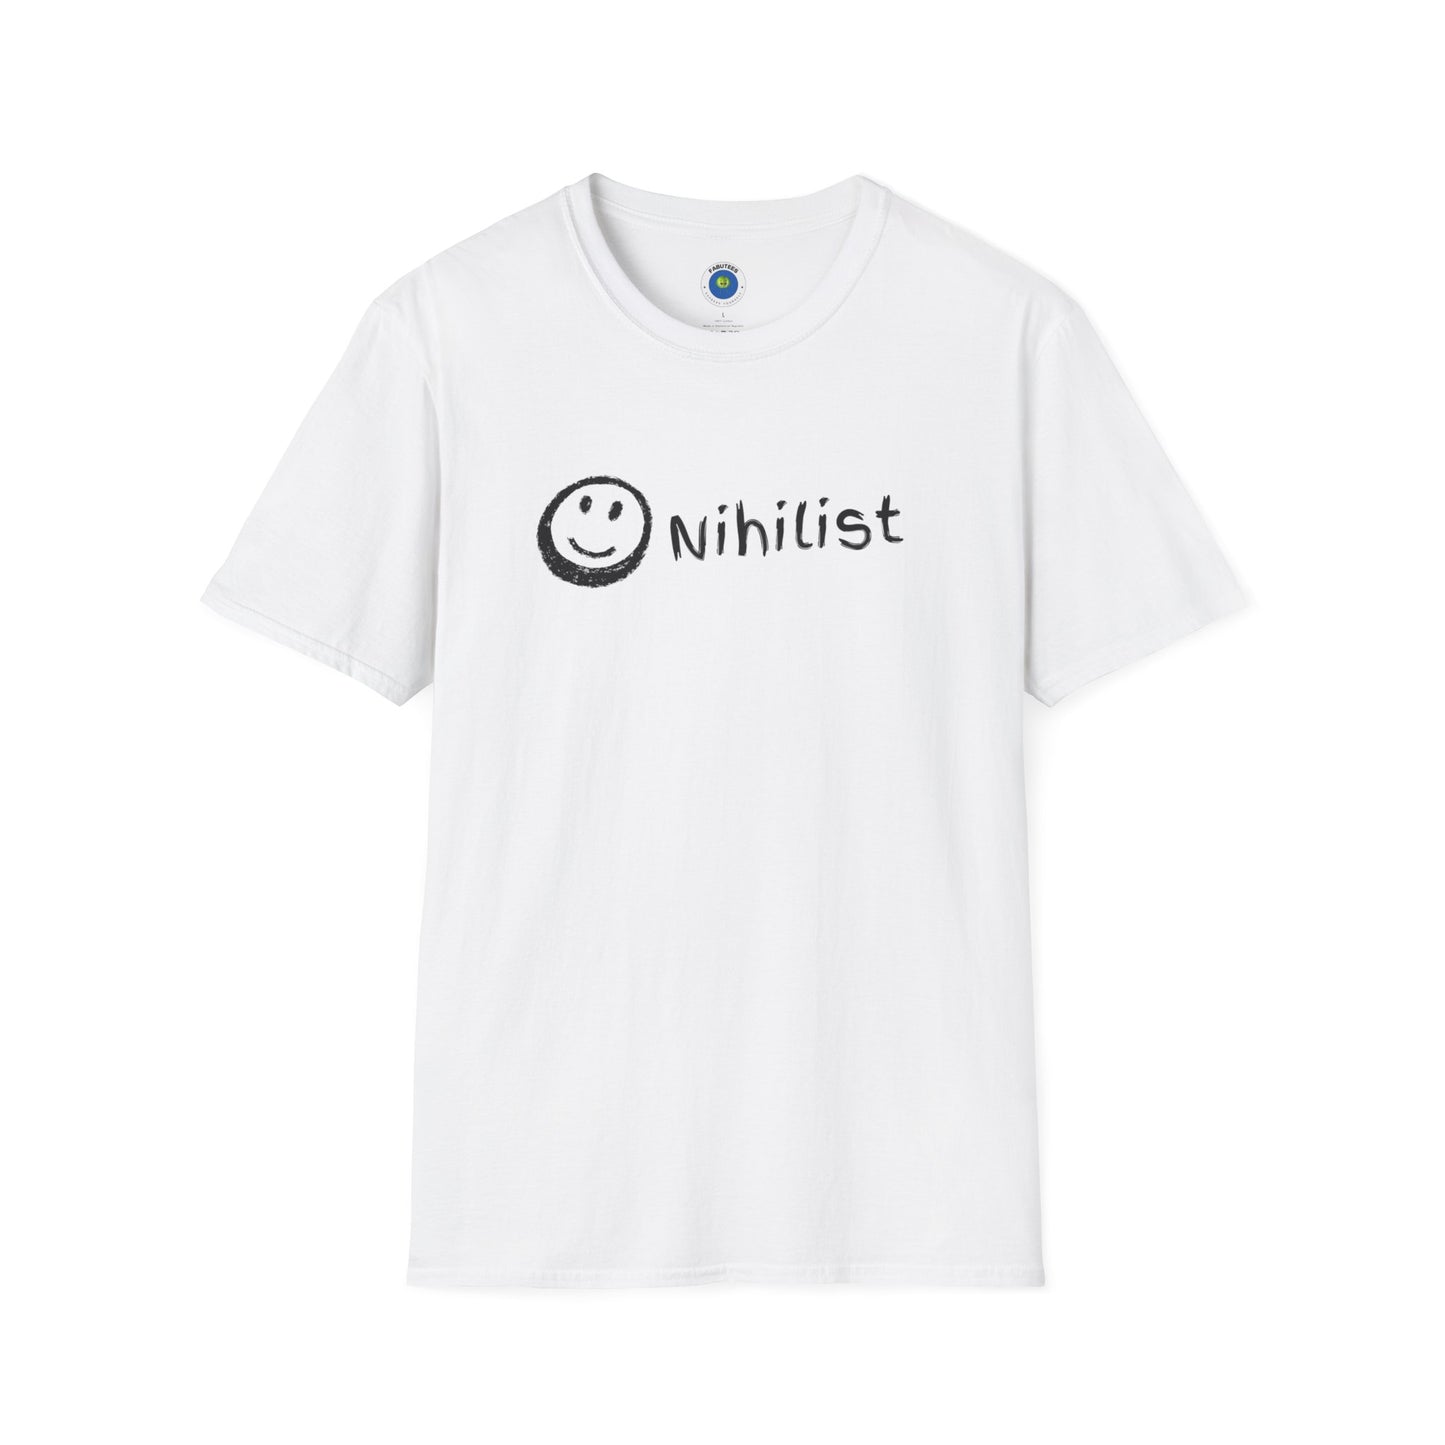 Happy Nihilist Shirt